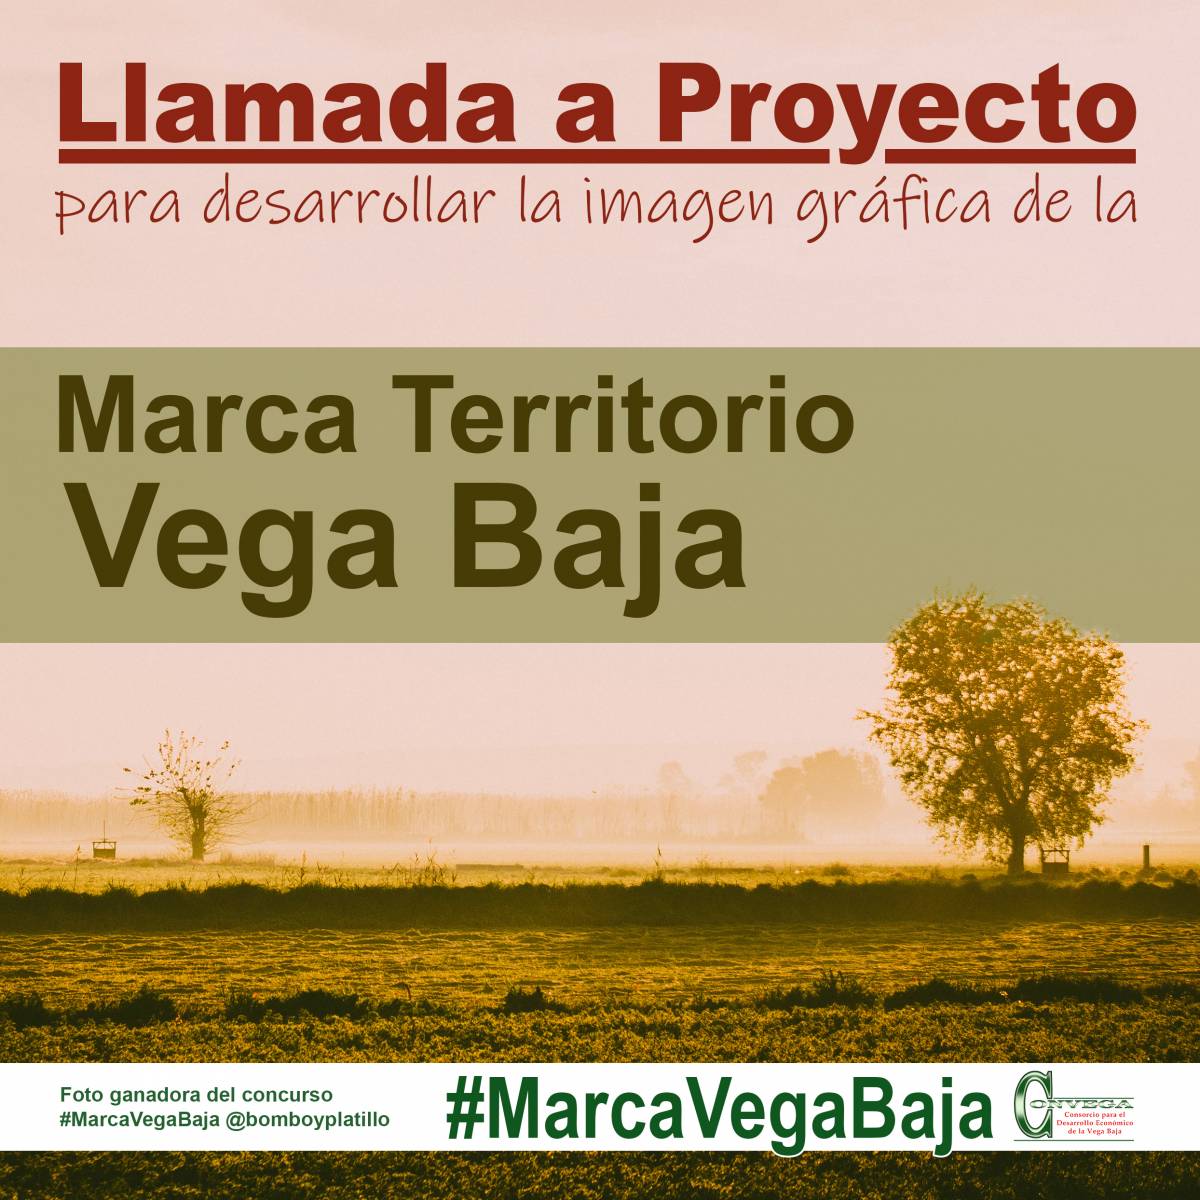 Llamada a proyecto para desarrollar la imagen gráfica de la Marca Territorio para la Vega Baja